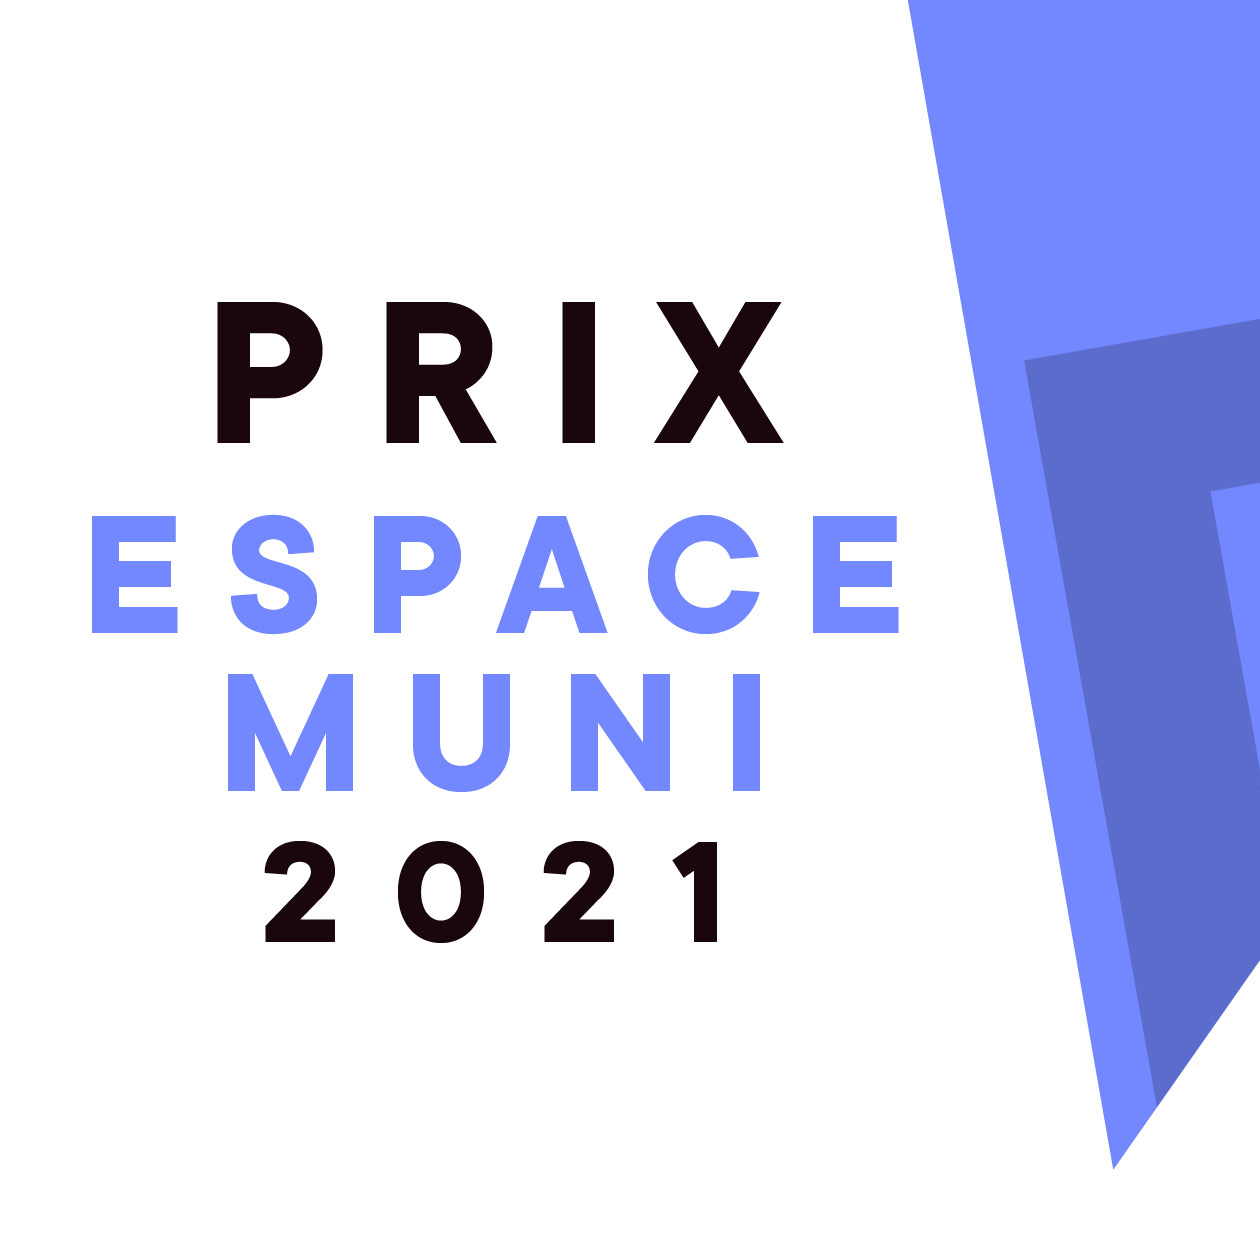 Prix Espace MUNI 2021 : Lauréats dévoilés